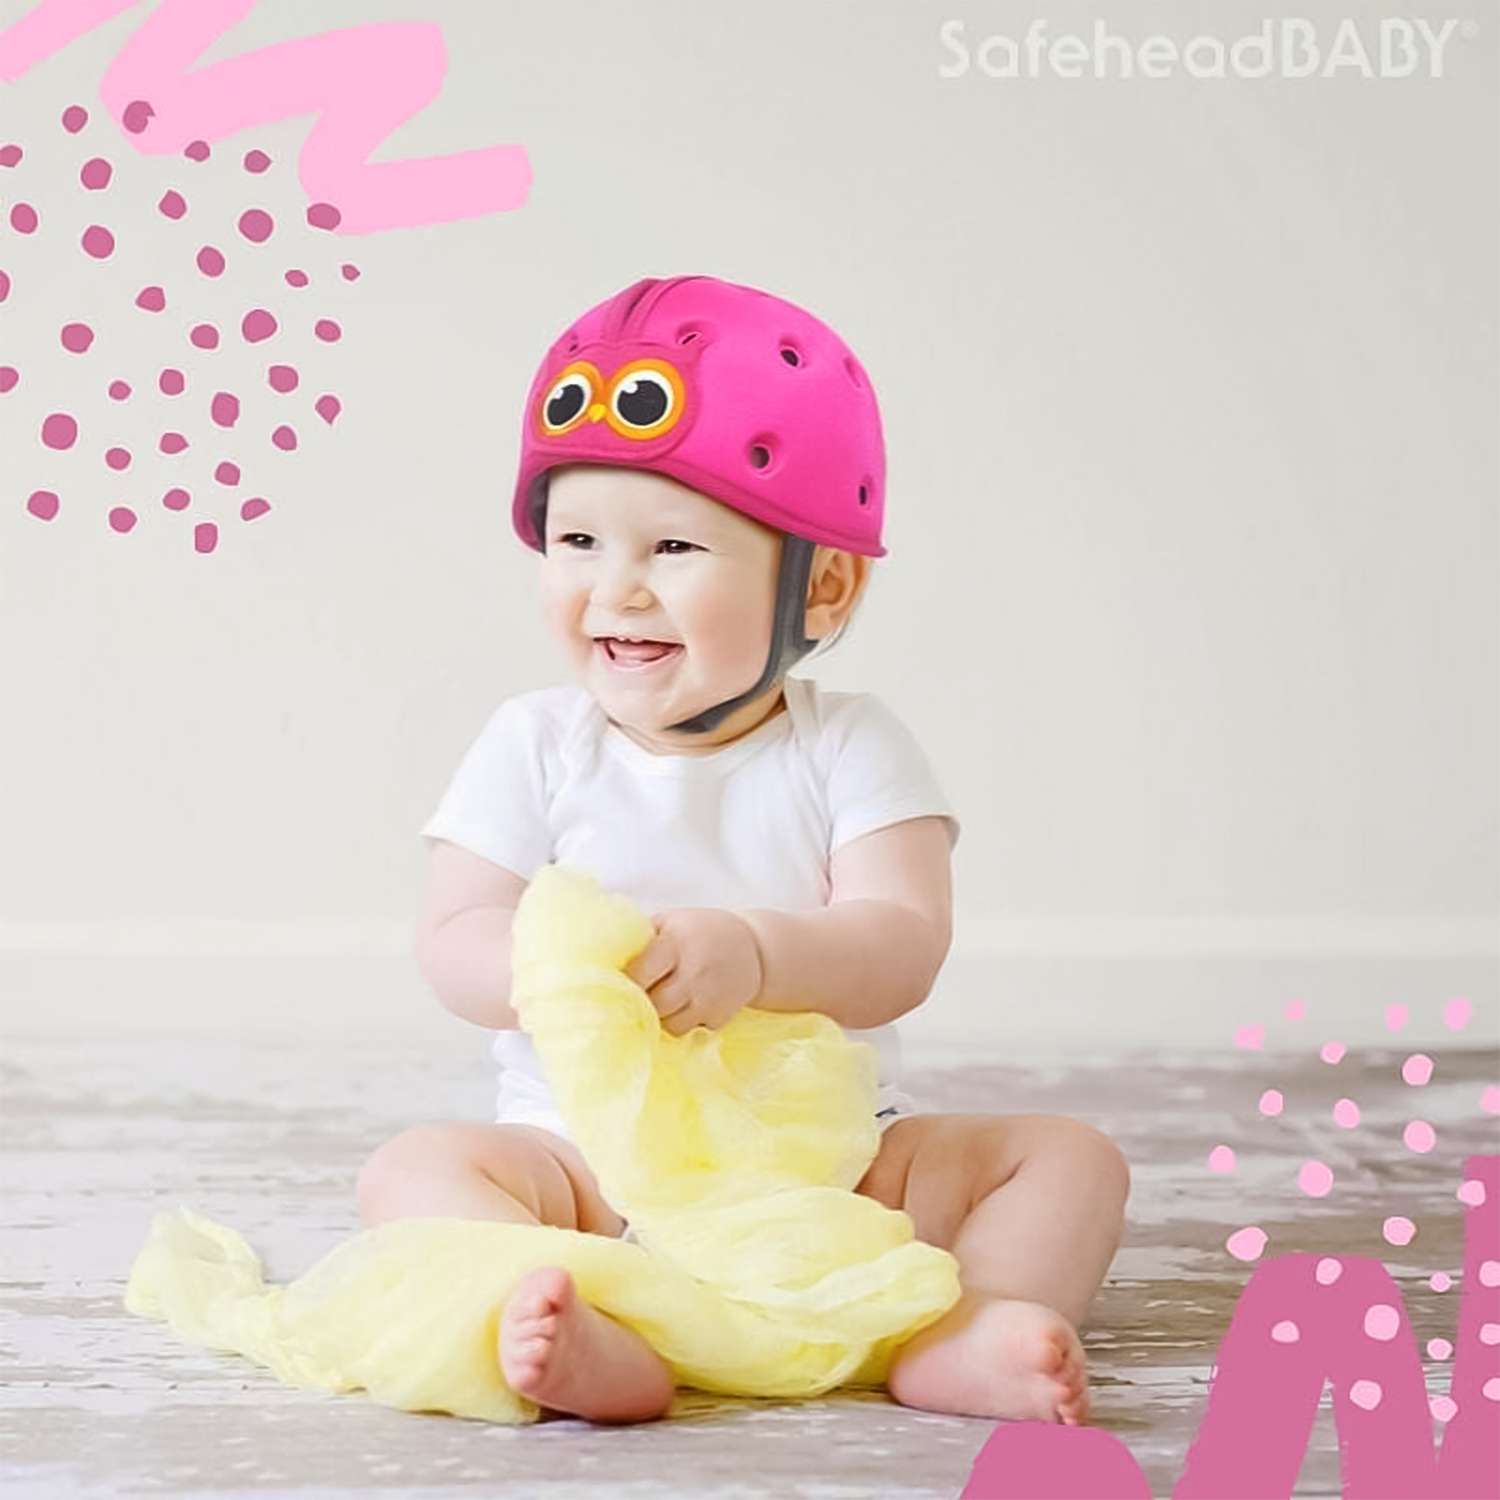 Шапка-шлем SafeheadBABY для защиты головы Сова розовый - фото 6